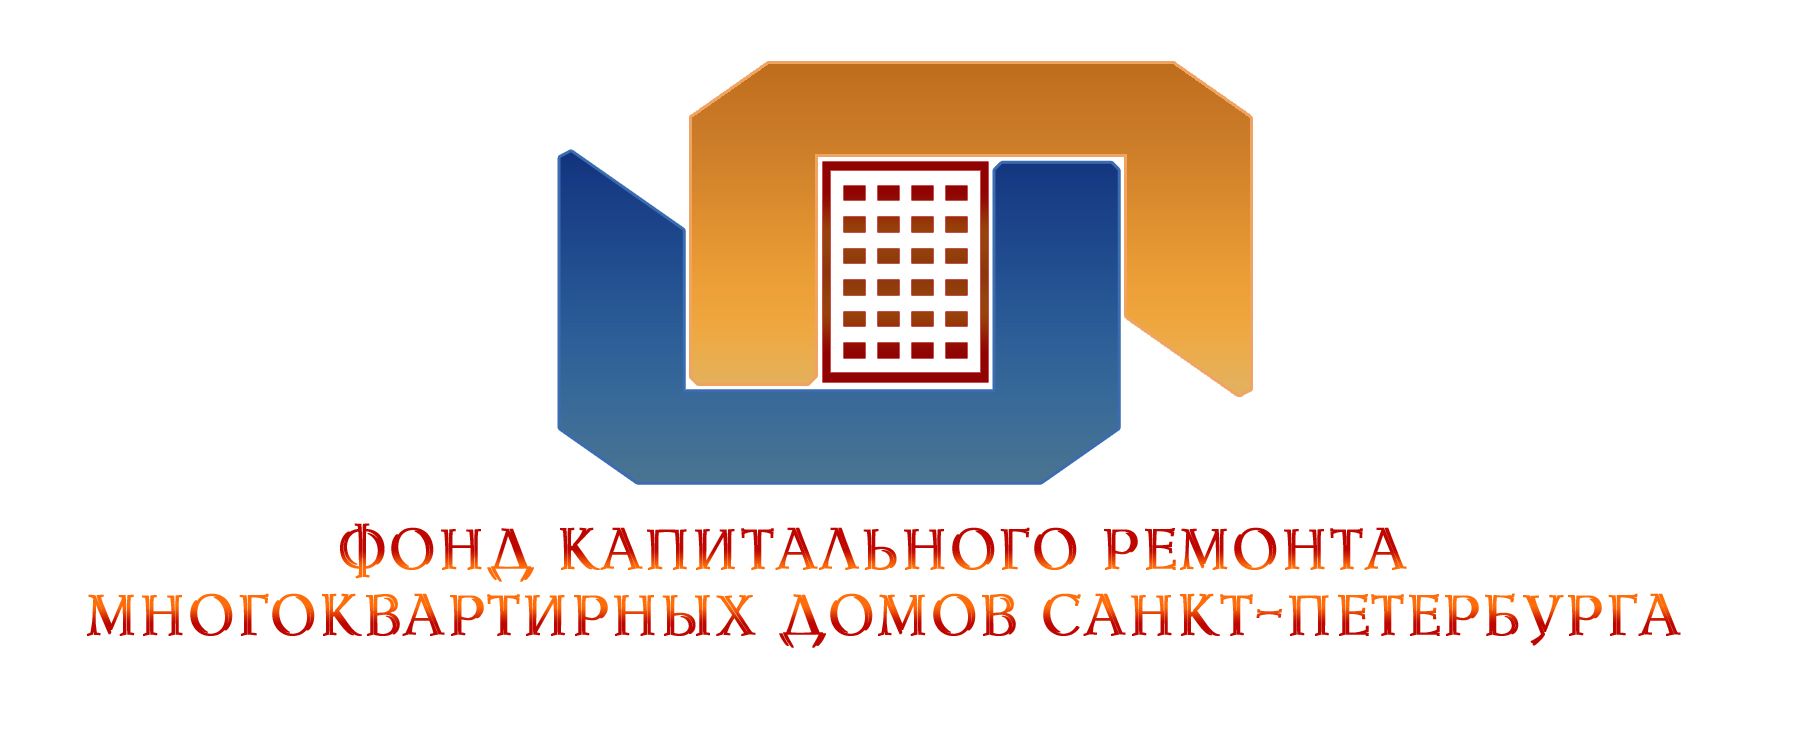 Логотип для Фонда капитального ремонта - дизайнер NataliMi